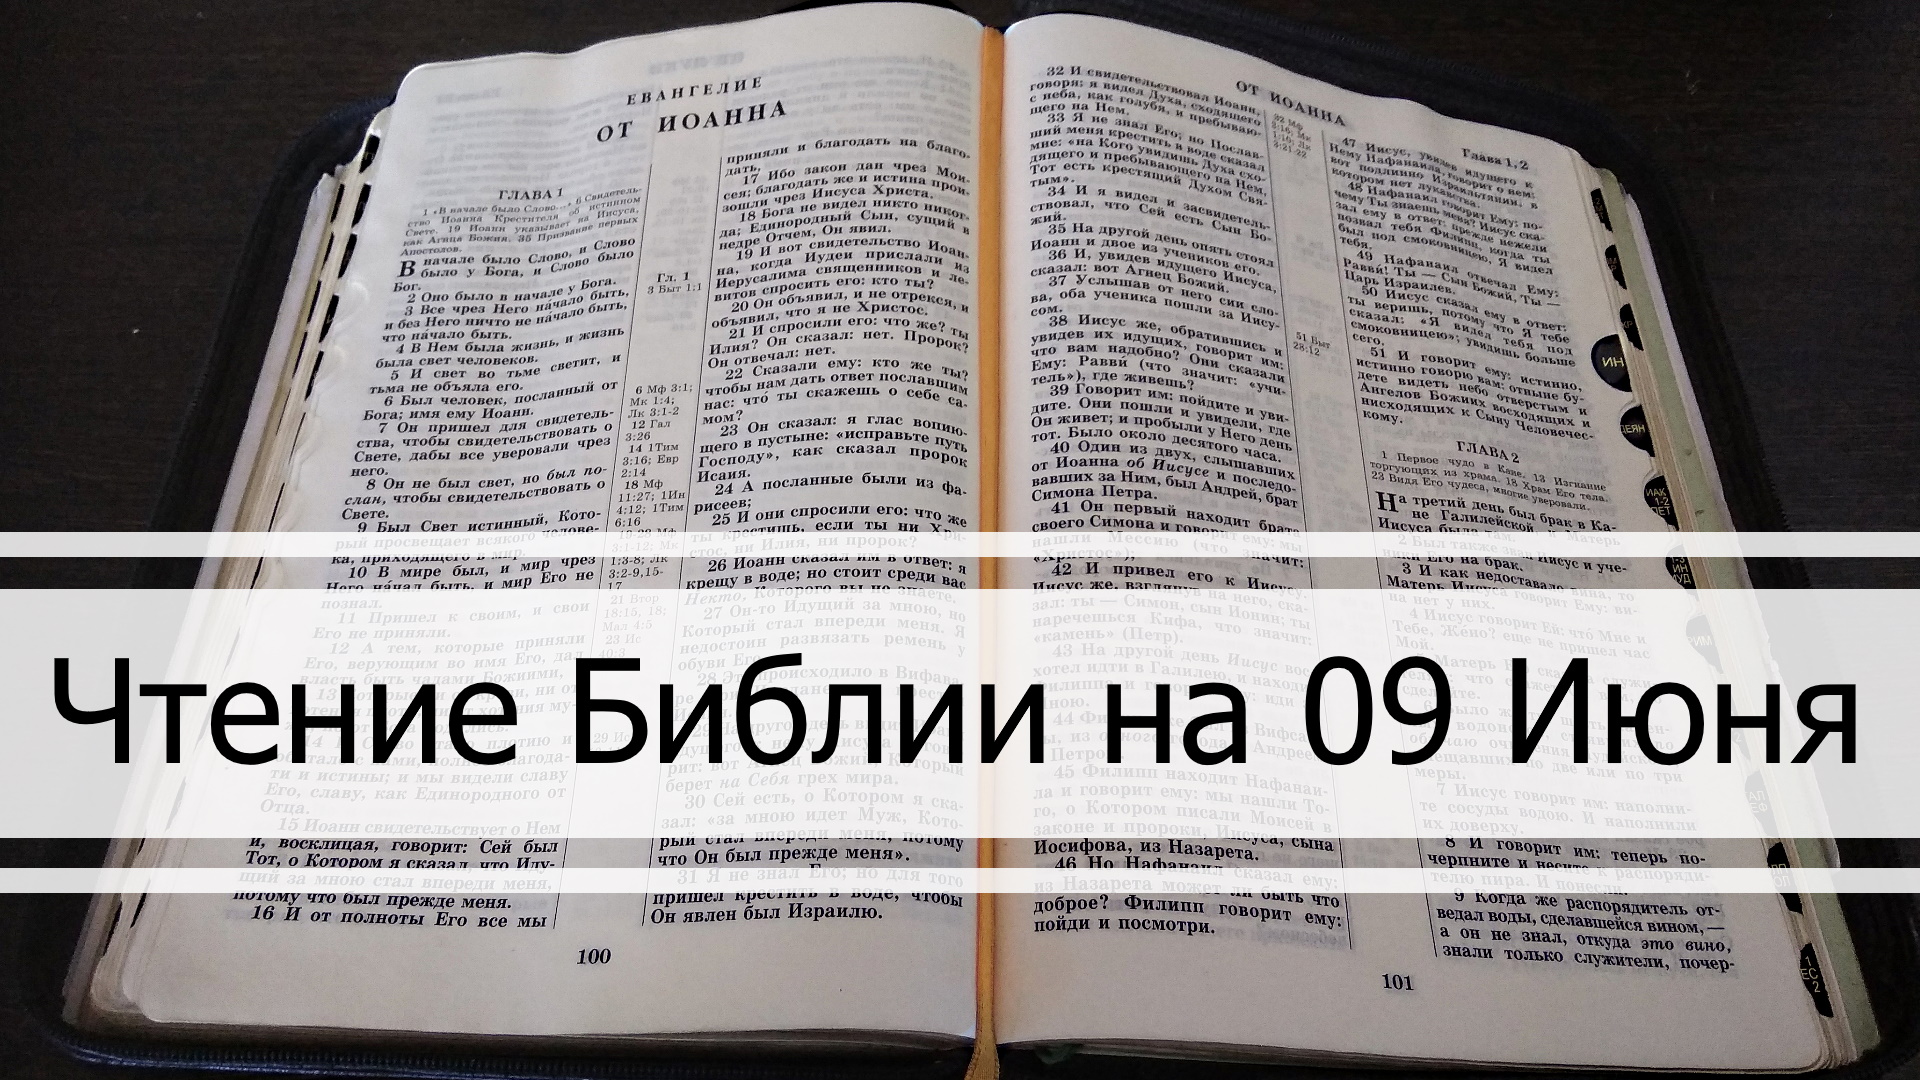 Чтение Библии на 09 Июня: Притчи Соломона 9, Евангелие от Иоанна 19, Песня Песней 1, 2, 3